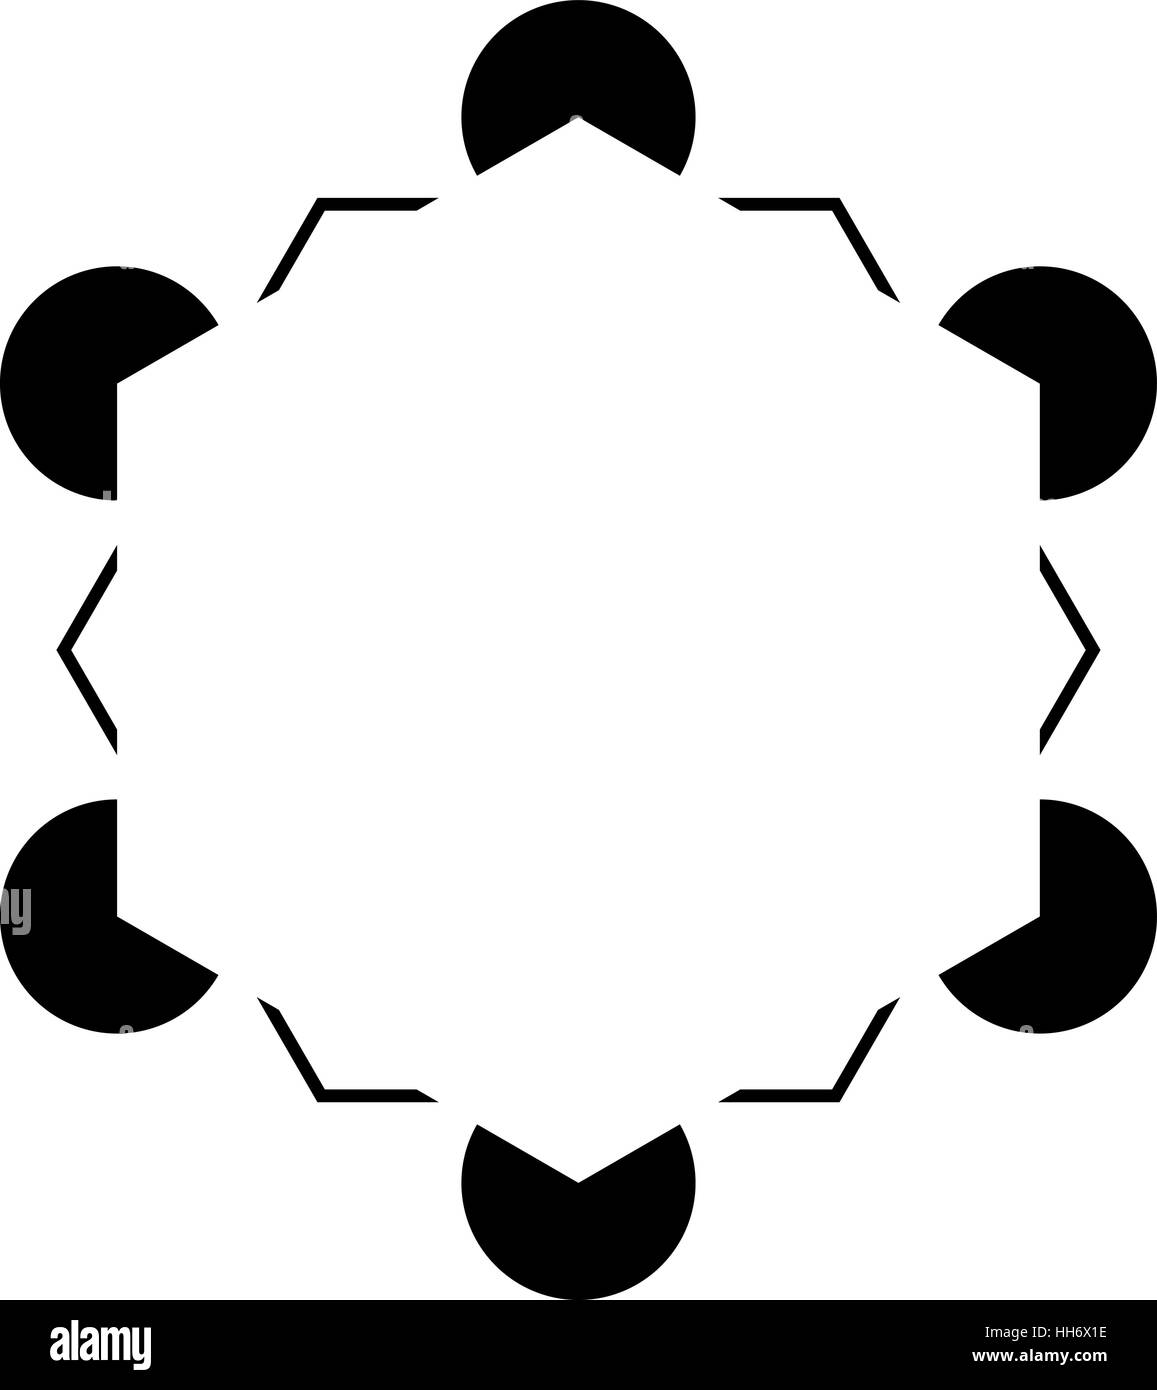 Hexagon variation of the Kanizsa Optical Illusion  - editable vector Stock Vector